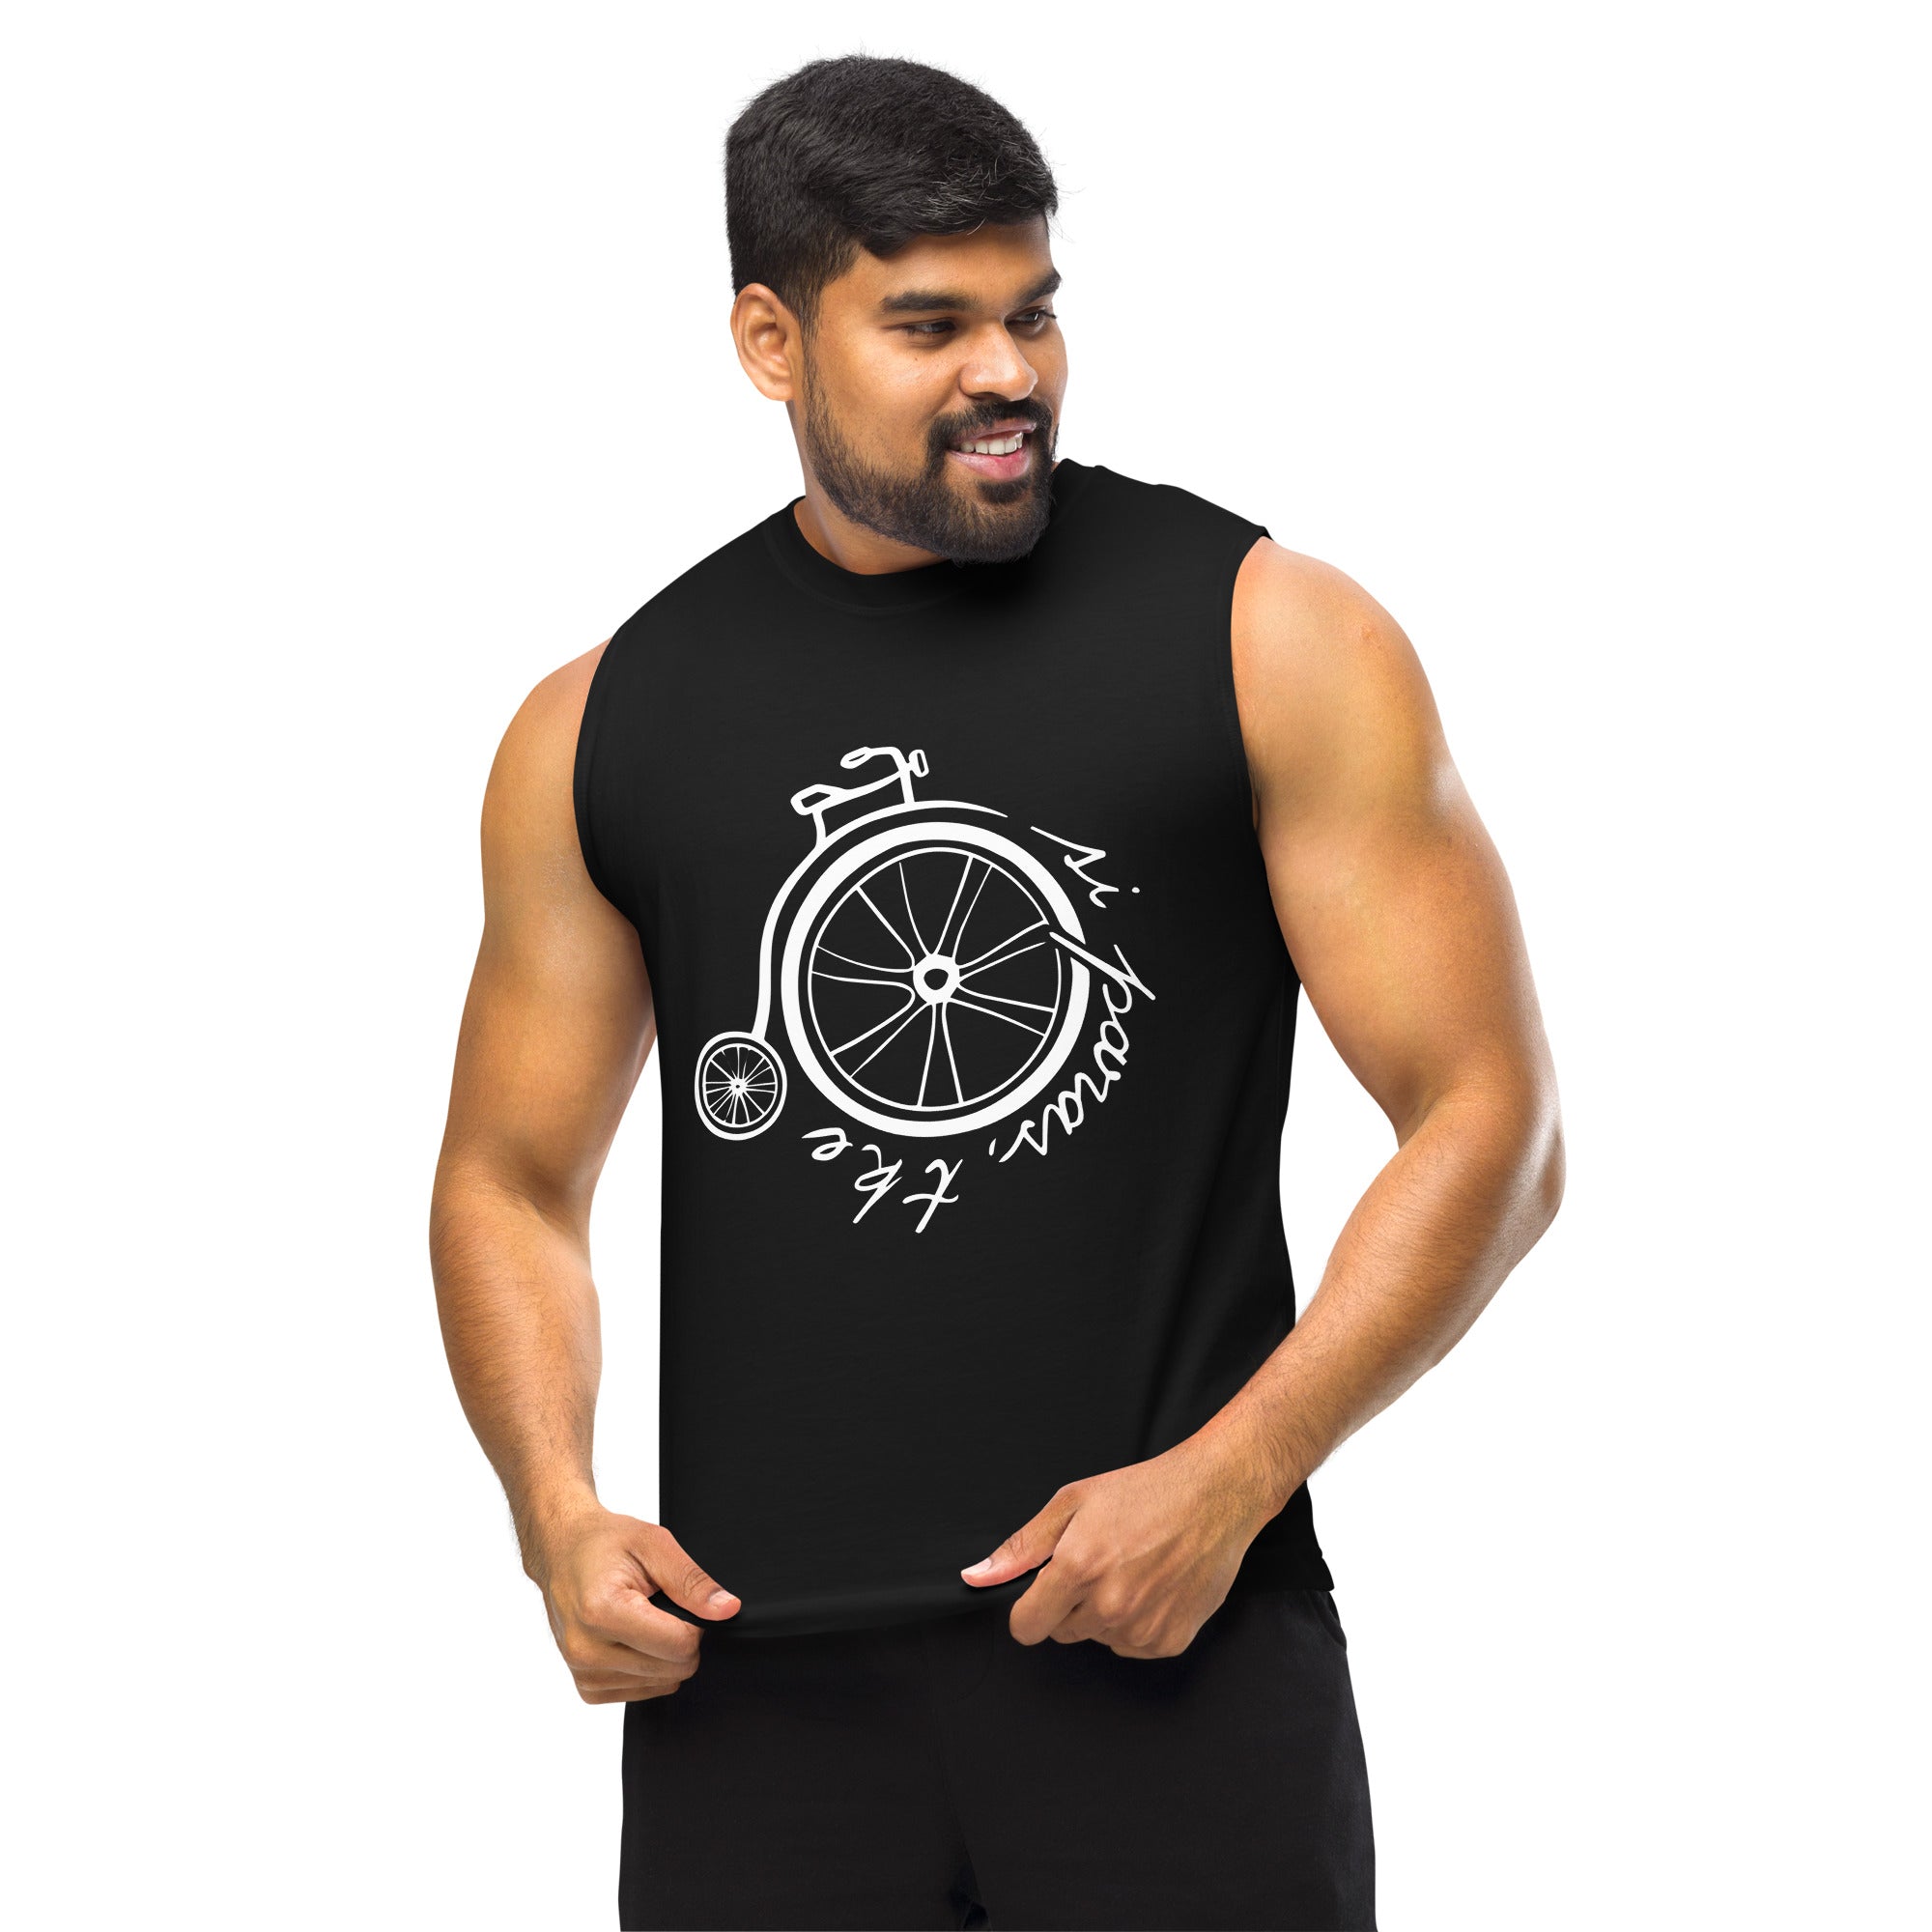 unisex-muscle-shirt-black-front-655c1152d5074.jpg